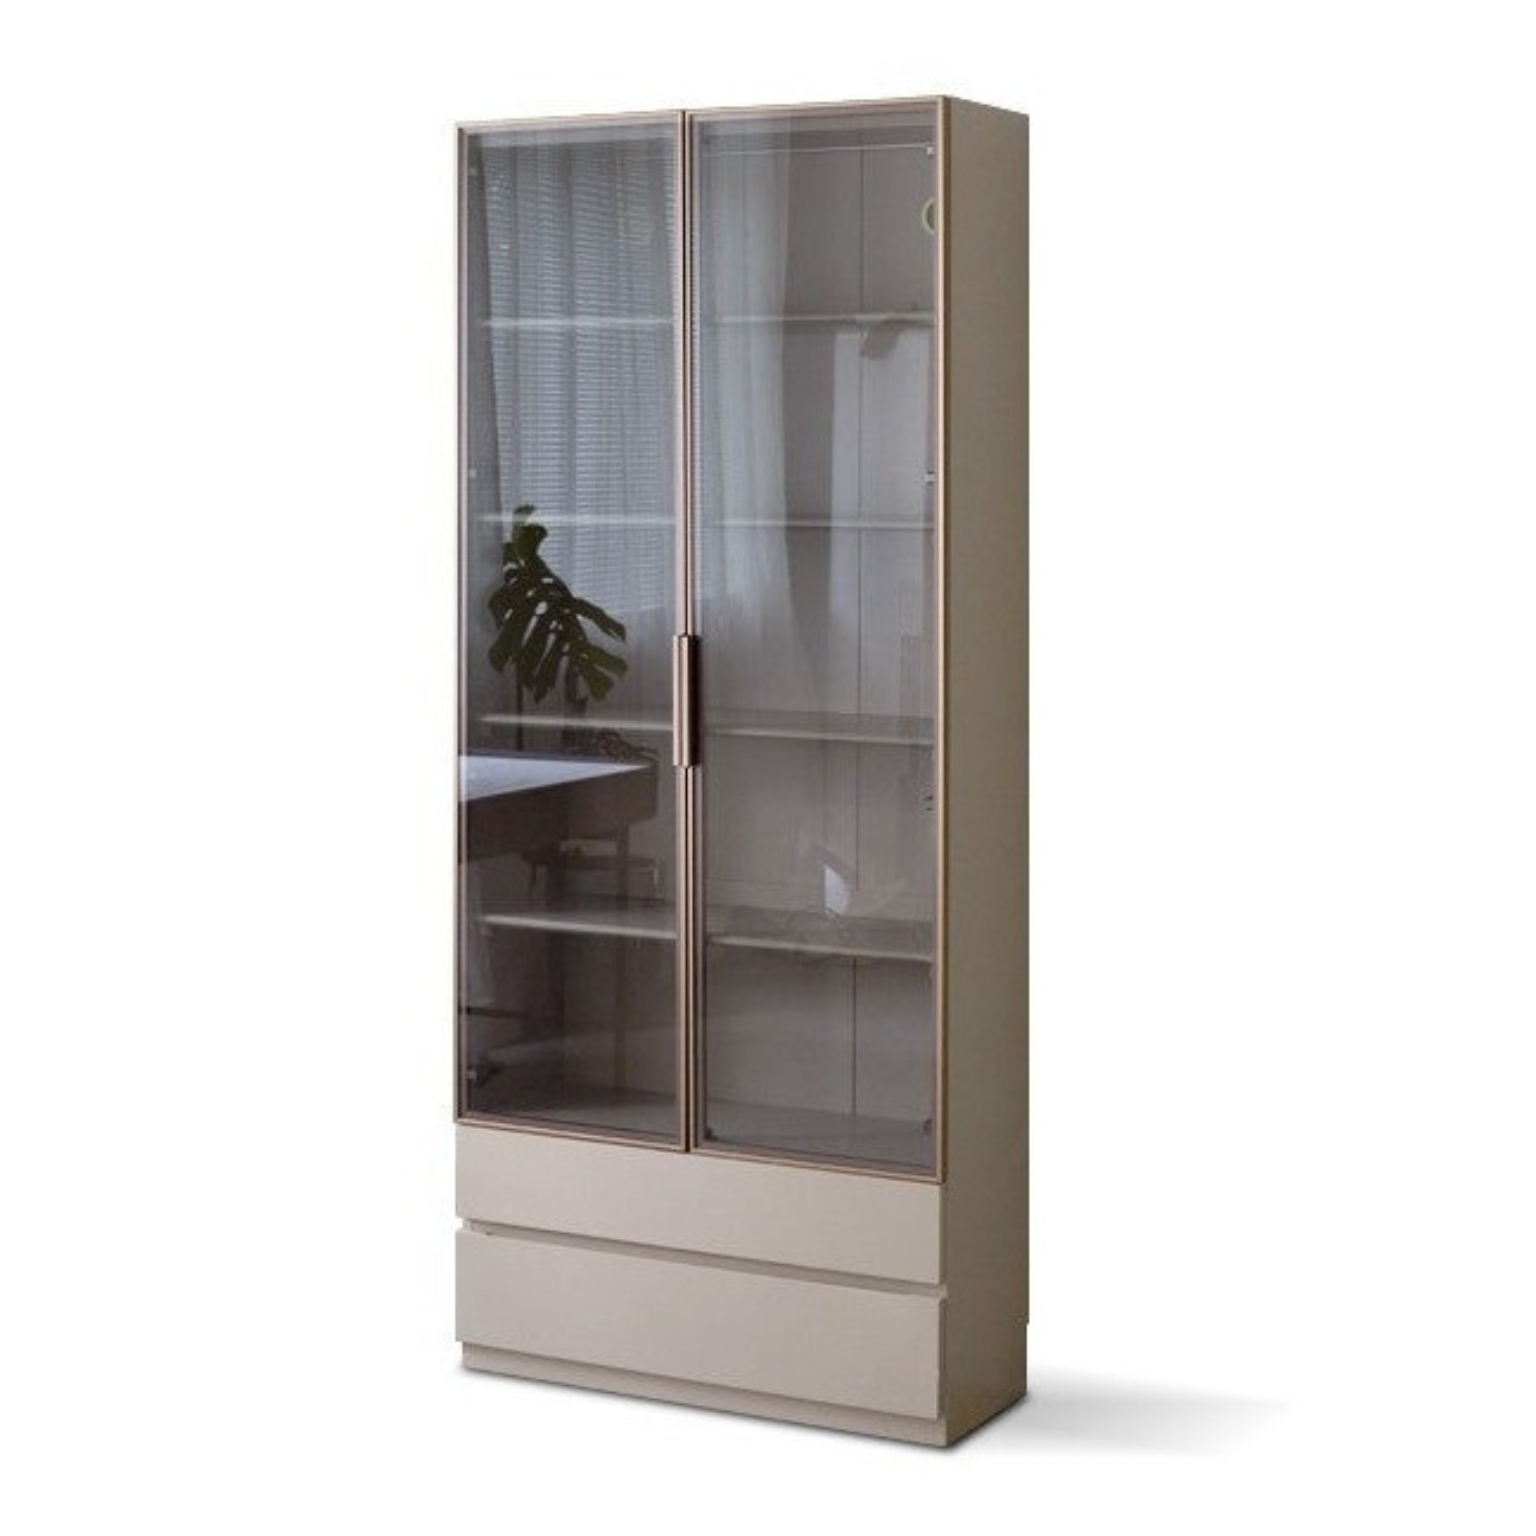 Poplar solid wood combination bookcase,glass door cabinet -